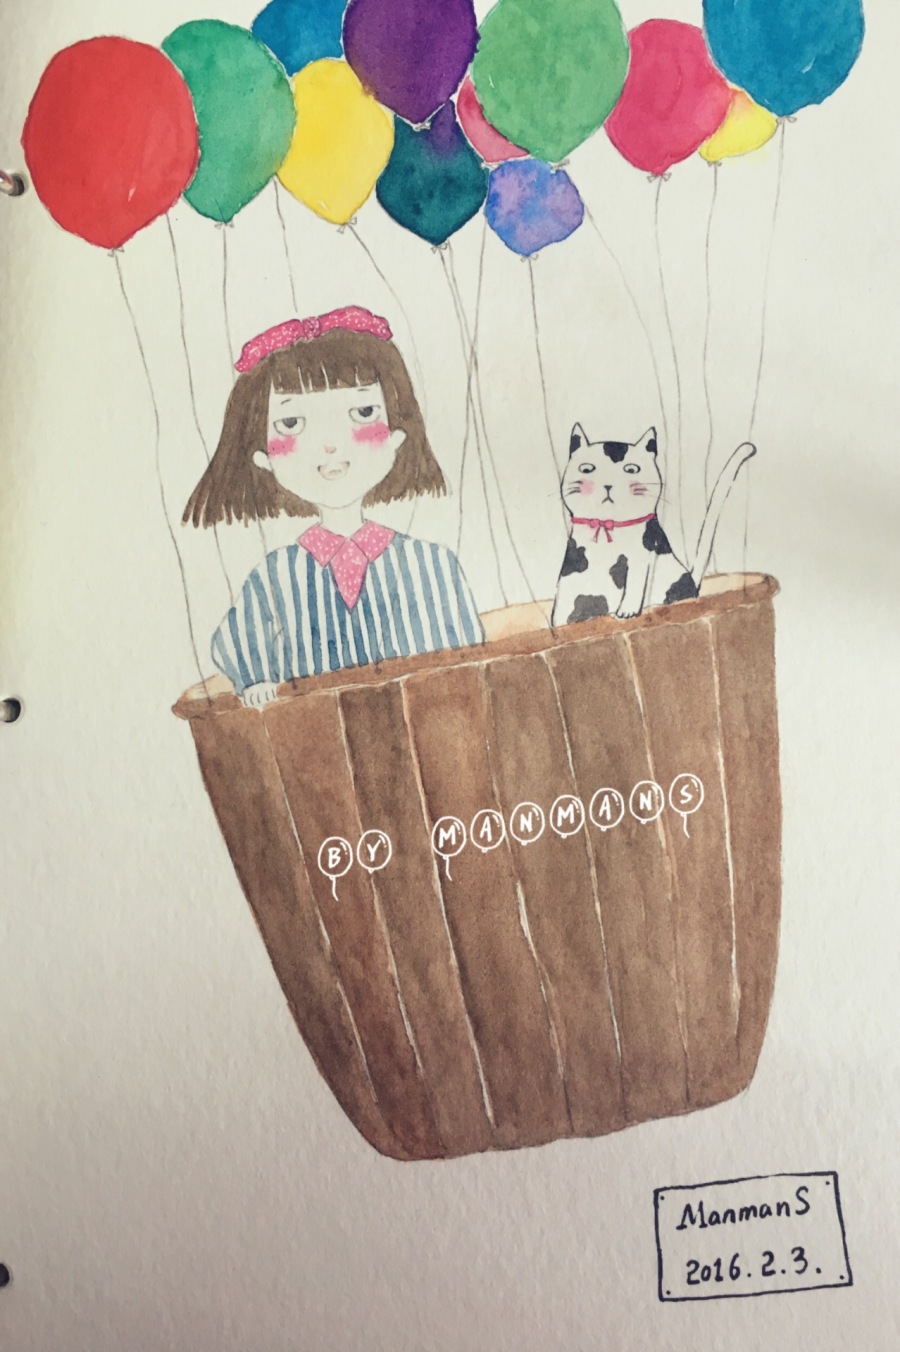 ManmanS水彩绘--女孩、猫和热气球|绘画习作